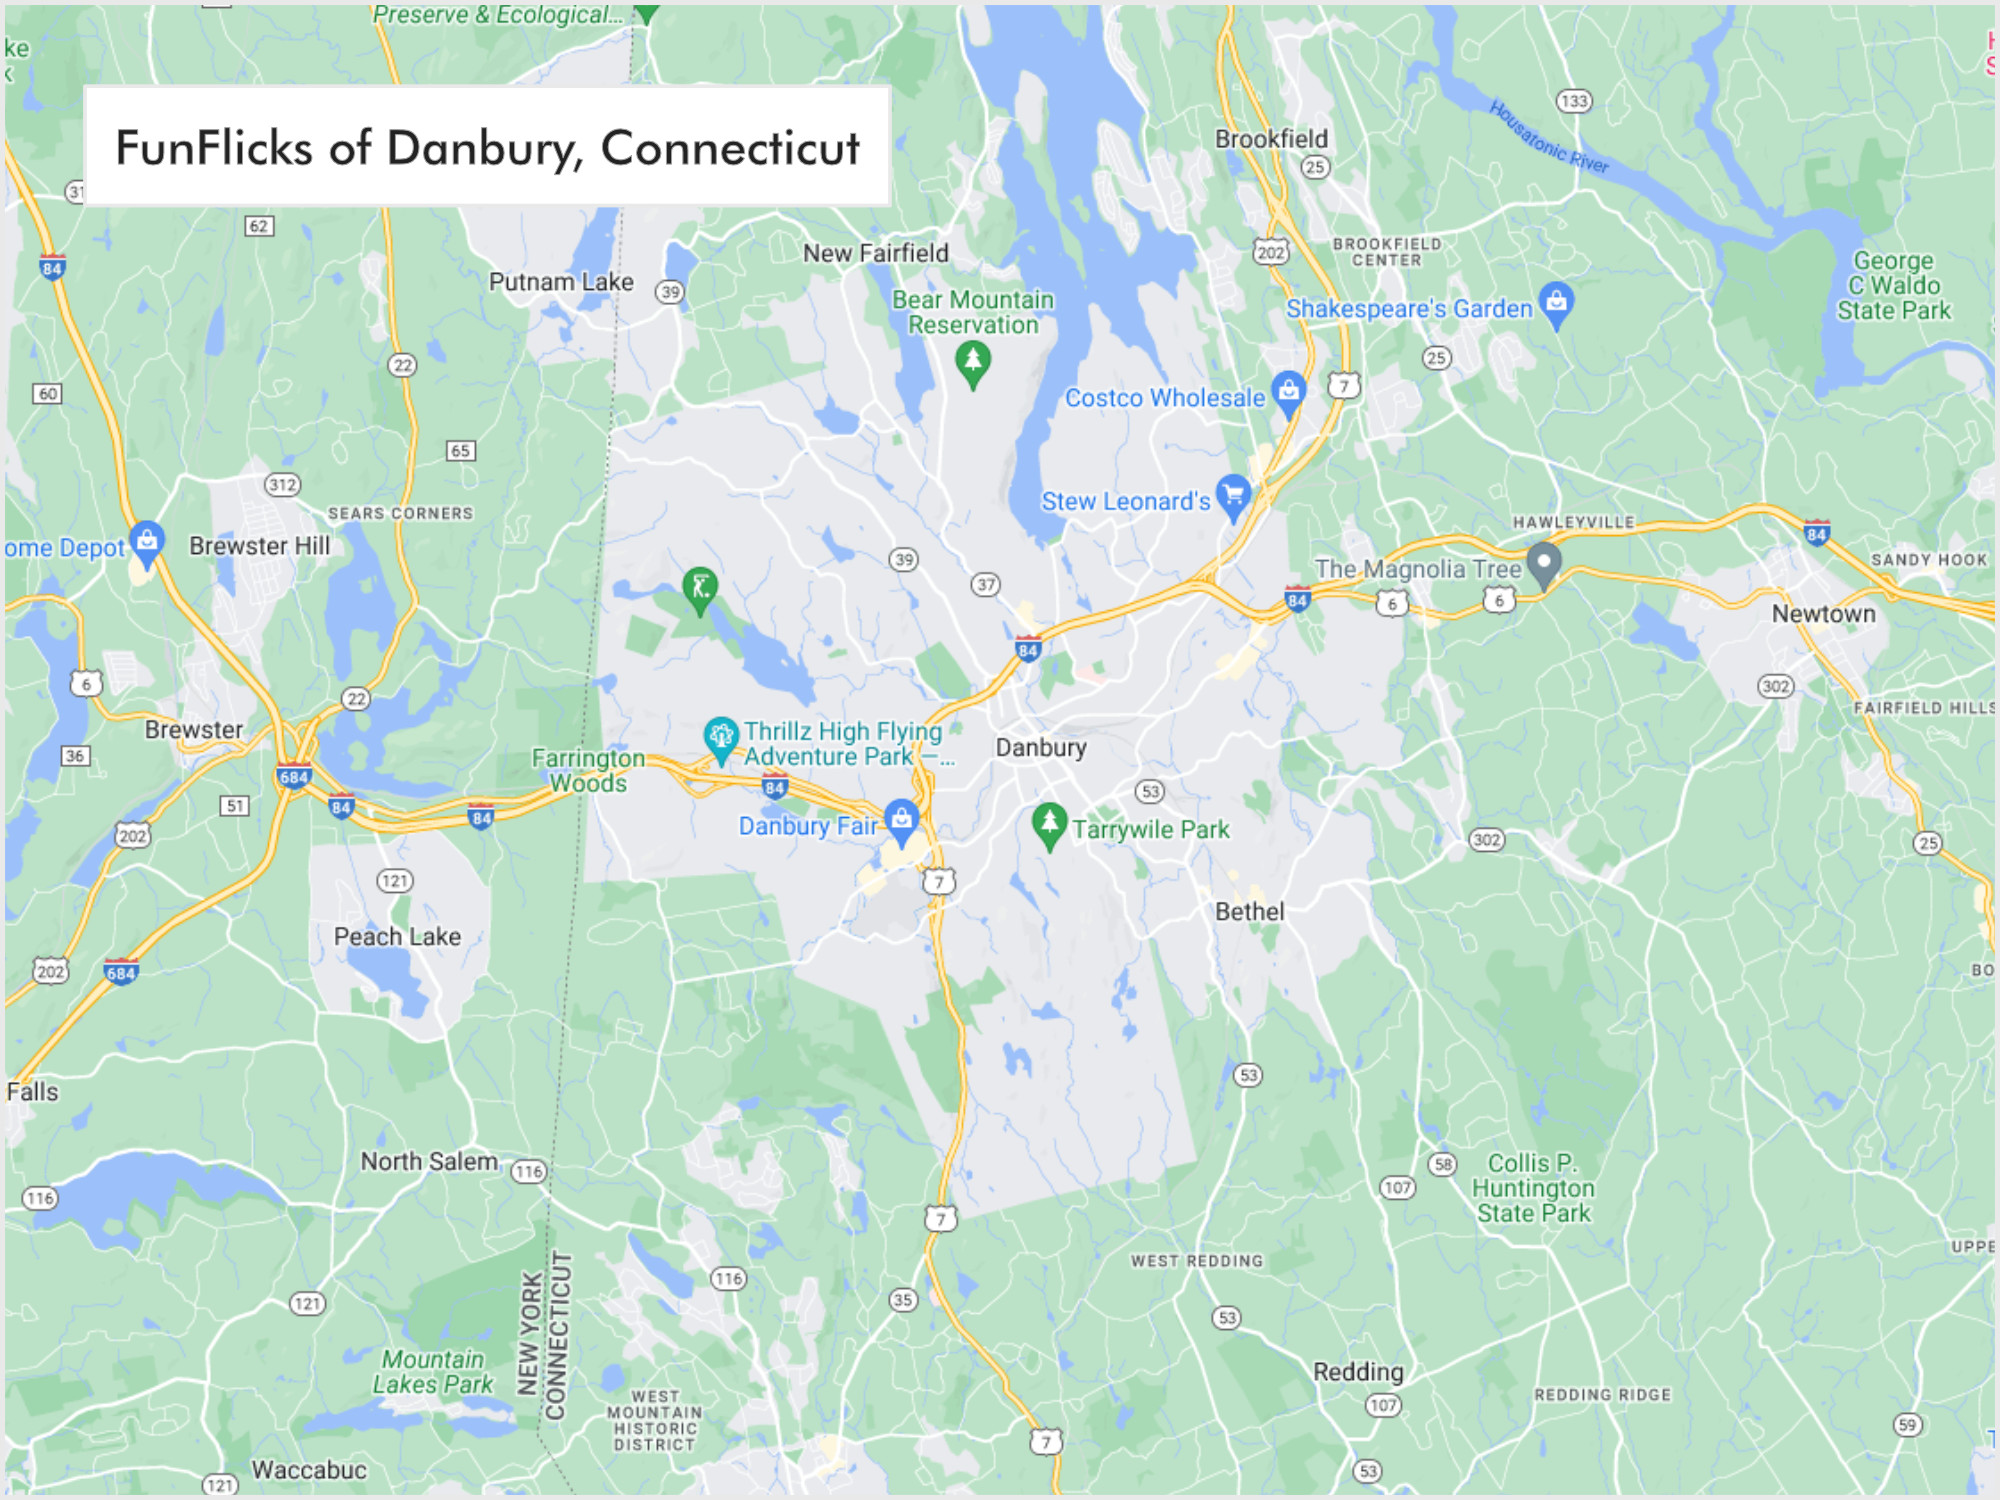 FunFlicks® Danbury territory map